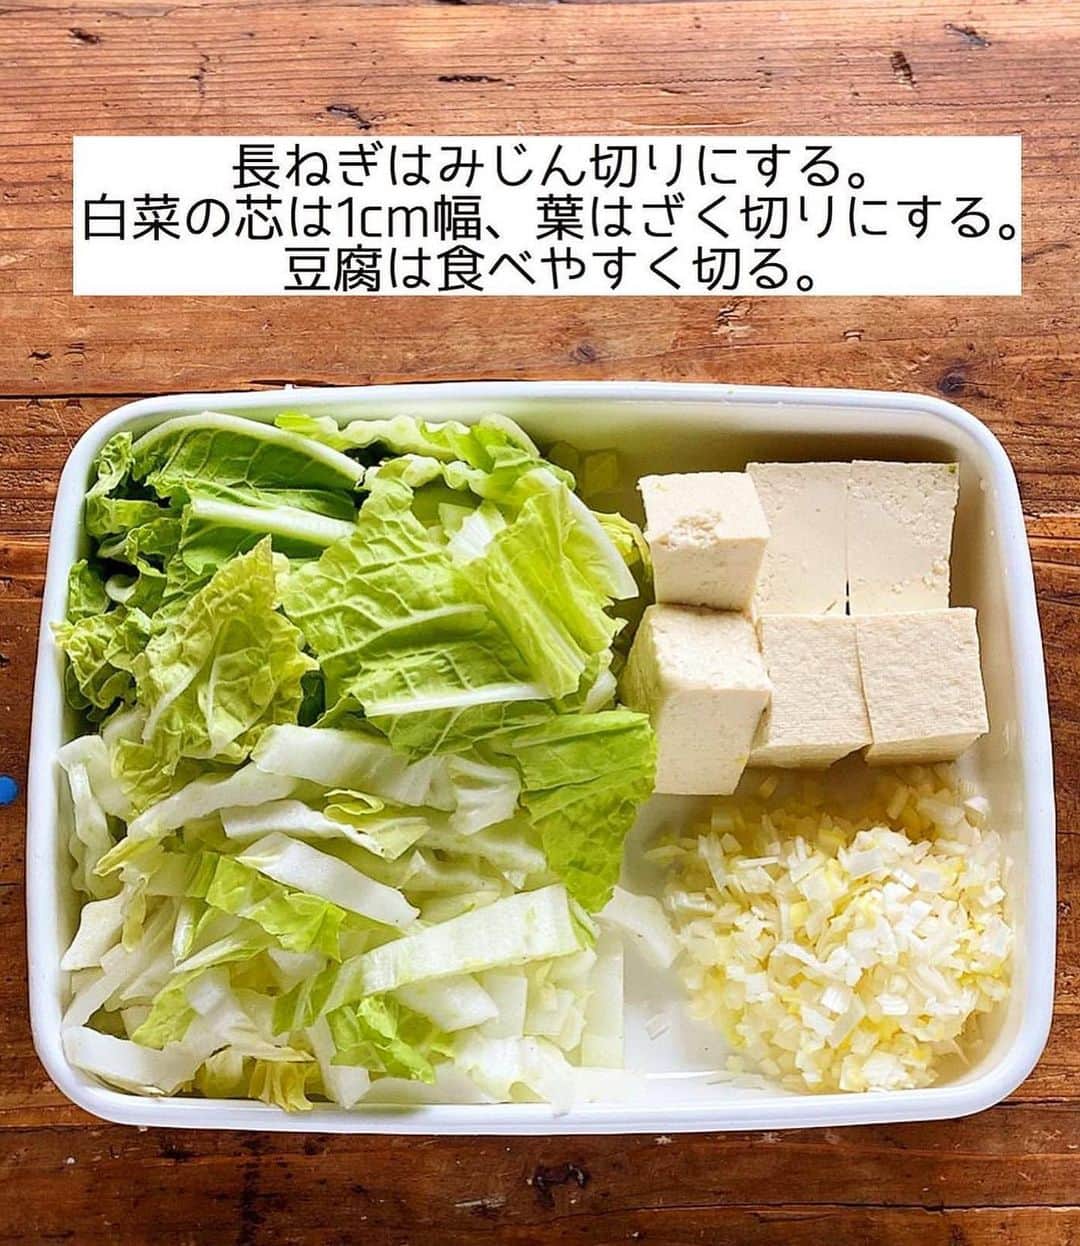 Mizuki【料理ブロガー・簡単レシピ】さんのインスタグラム写真 - (Mizuki【料理ブロガー・簡単レシピ】Instagram)「・おうちにある材料で💕 ⁡ ［#レシピ ］ ーーーーーーーーーーーーーーーー 練りごまなし！白菜の豆乳担々鍋 (お子さんも食べられます😋) ーーーーーーーーーーーーーーーー ⁡ ⁡ ⁡ おはようございます☺️ ⁡ 今日ご紹介させていただくのは \ 白菜の豆乳担々鍋 / (再掲載) ⁡ 練りごま要らずでお手軽‼️ ［豆乳×すりごま］で マイルドでクリーミーに仕上げました💕 スープ自体は辛くないので お子さんも一緒に食べられますよ〜♩ (大人は取り分け後にラー油をかけて✨) ⁡ 特別な材料なしでできるので お気軽にお試しくださいね🥰 〆はラーメンがおすすめです♩ ⁡ ⁡ ⁡ ⋱⋰ ⋱⋰ ⋱⋰ ⋱⋰ ⋱⋰ ⋱⋰ ⋱⋰ 📍簡単・時短・節約レシピ更新中  Threadsもこちらから▼ @mizuki_31cafe ⁡ 📍謎の暮らし＆変なライブ垢 @mizuki_kurashi ⋱⋰ ⋱⋰ ⋱⋰ ⋱⋰ ⋱⋰ ⋱⋰ ⋱⋰ ⁡ ⁡ ⁡ ＿＿＿＿＿＿＿＿＿＿＿＿＿＿＿＿＿＿＿ 【2人分】 豚ひき肉...200g 長ねぎ...1/3本 白菜...1/6個(350g) 豆腐...1/2丁 ごま油...大1/2 ●オイスターソース...大1 ●(好みで)豆板醤...小1/2 ☆水...300ml ☆鶏がらスープ・味噌...各大1 豆乳(無調整)...200ml すりごま...大3 (好みで)ラー油...適量 ⁡ 1.長ねぎはみじん切りにする。白菜の芯は1cm幅、葉はざく切りにする。豆腐は食べやすい大きさに切る。 2.鍋にごま油を中火で熱し、ひき肉と長ねぎを炒める。火が通ったら●を加えて煮からめ、一旦取り出しておく。 3.そのままの鍋に☆を入れて煮立て、白菜と豆腐を加え、蓋をして5分煮る。 4.豆乳とすりごまを加えて温め(沸騰しない火加減で)、中央に2をのせる。仕上げにラー油をかける。 ￣￣￣￣￣￣￣￣￣￣￣￣￣￣￣￣￣￣￣ ⁡ ⁡ 《ポイント》 ♦︎仕上げのラー油無しなら辛くないのでお子さんも食べられます♩大人は取り分けてからラー油をかければOK！ ♦︎豆乳は沸騰させると分離するので、火加減に気をつけて下さい☆(個人的には多少分離しても気になりませんが😳) ♦︎白菜の代わりにキャベツで作ったり、きのこやニラなどを加えても◎豆腐は絹でも木綿でも厚揚げでも◎ ⁡ ⁡ ⁡ ⁡ ⁡ ⋱⋰ ⋱⋰ ⋱⋰ ⋱⋰ ⋱⋰ ⋱⋰ ⋱⋰  愛用している調理器具・器など   #楽天ROOMに載せてます ‎𐩢𐩺  (ハイライトから飛べます🕊️) ⋱⋰ ⋱⋰ ⋱⋰ ⋱⋰ ⋱⋰ ⋱⋰ ⋱⋰ ⁡ ⁡ ⁡ ⁡ ⁡ ✼••┈┈┈┈┈••✼••┈┈┈┈┈••✼ 今日のごはんこれに決まり！ ‎𓊆#Mizukiのレシピノート 500品𓊇 ✼••┈┈┈┈┈••✼••┈┈┈┈┈••✼ ⁡ ˗ˏˋ おかげさまで25万部突破 ˎˊ˗ 料理レシピ本大賞準大賞を受賞しました✨ ⁡ 6000点の中からレシピを厳選し まさかの【500レシピ掲載】 肉や魚のメインおかずはもちろん 副菜、丼、麺、スープ、お菓子 ハレの日のレシピ、鍋のレシピまで 全てこの一冊で完結 𓌉◯𓇋 (全国の書店・ネット書店で発売中) ⁡ ⁡ ⁡ ⁡ ⁡ ⁡ #担々鍋 #白菜レシピ #鍋 #鍋料理 #ひき肉レシピ #豆腐レシピ #担々麺 #節約料理  #簡単料理  #時短料理 #mizukiレシピ  #時短レシピ #節約レシピ #簡単レシピ」11月4日 7時14分 - mizuki_31cafe